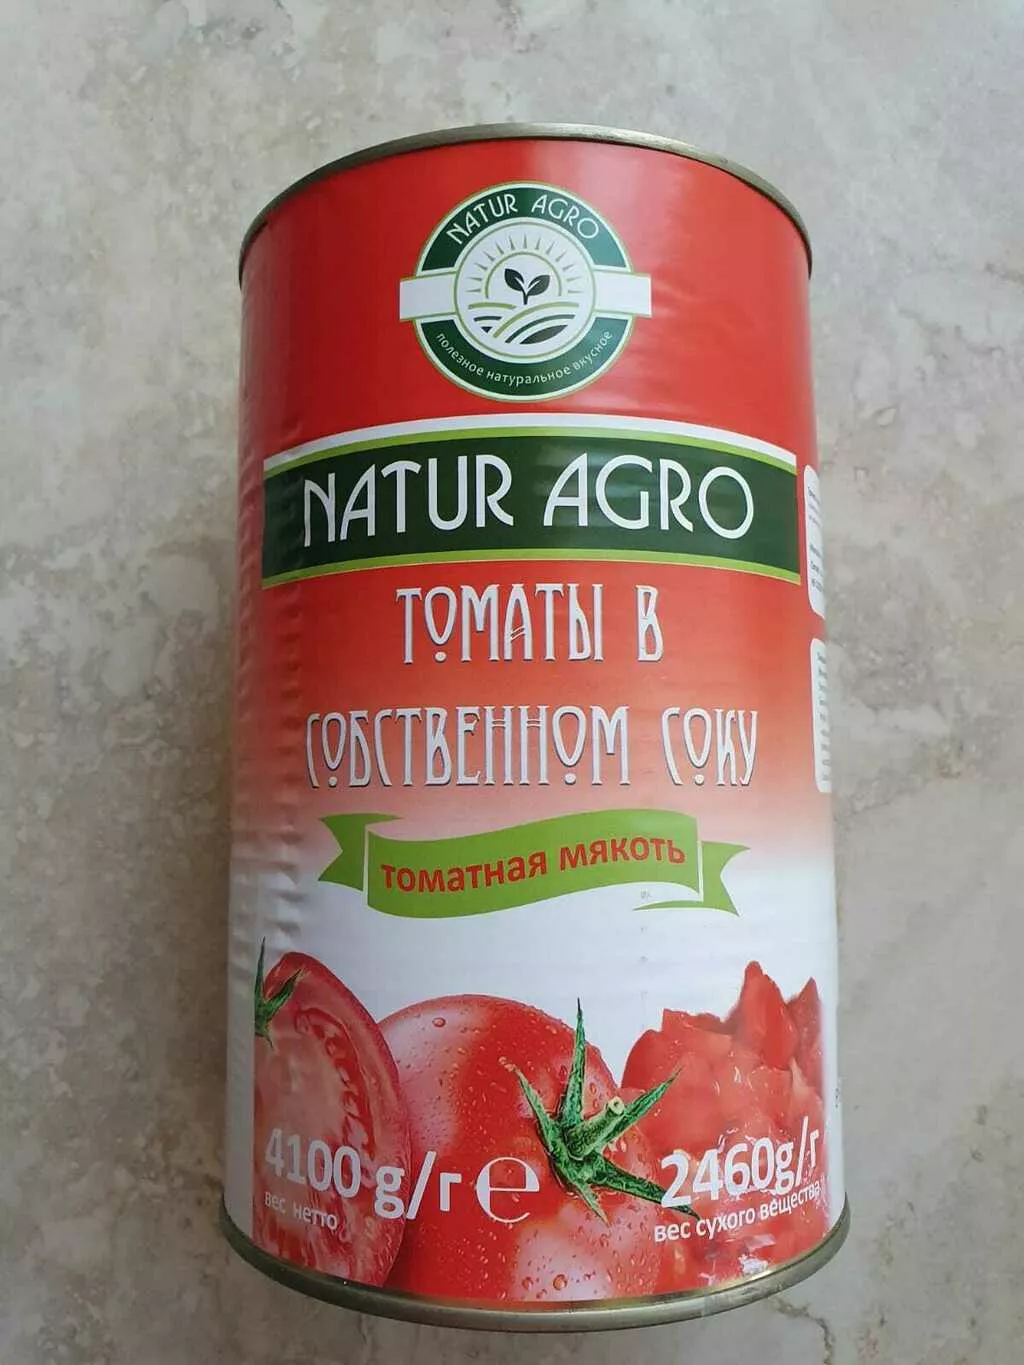 томаты резаные в собственном соку  в Москве